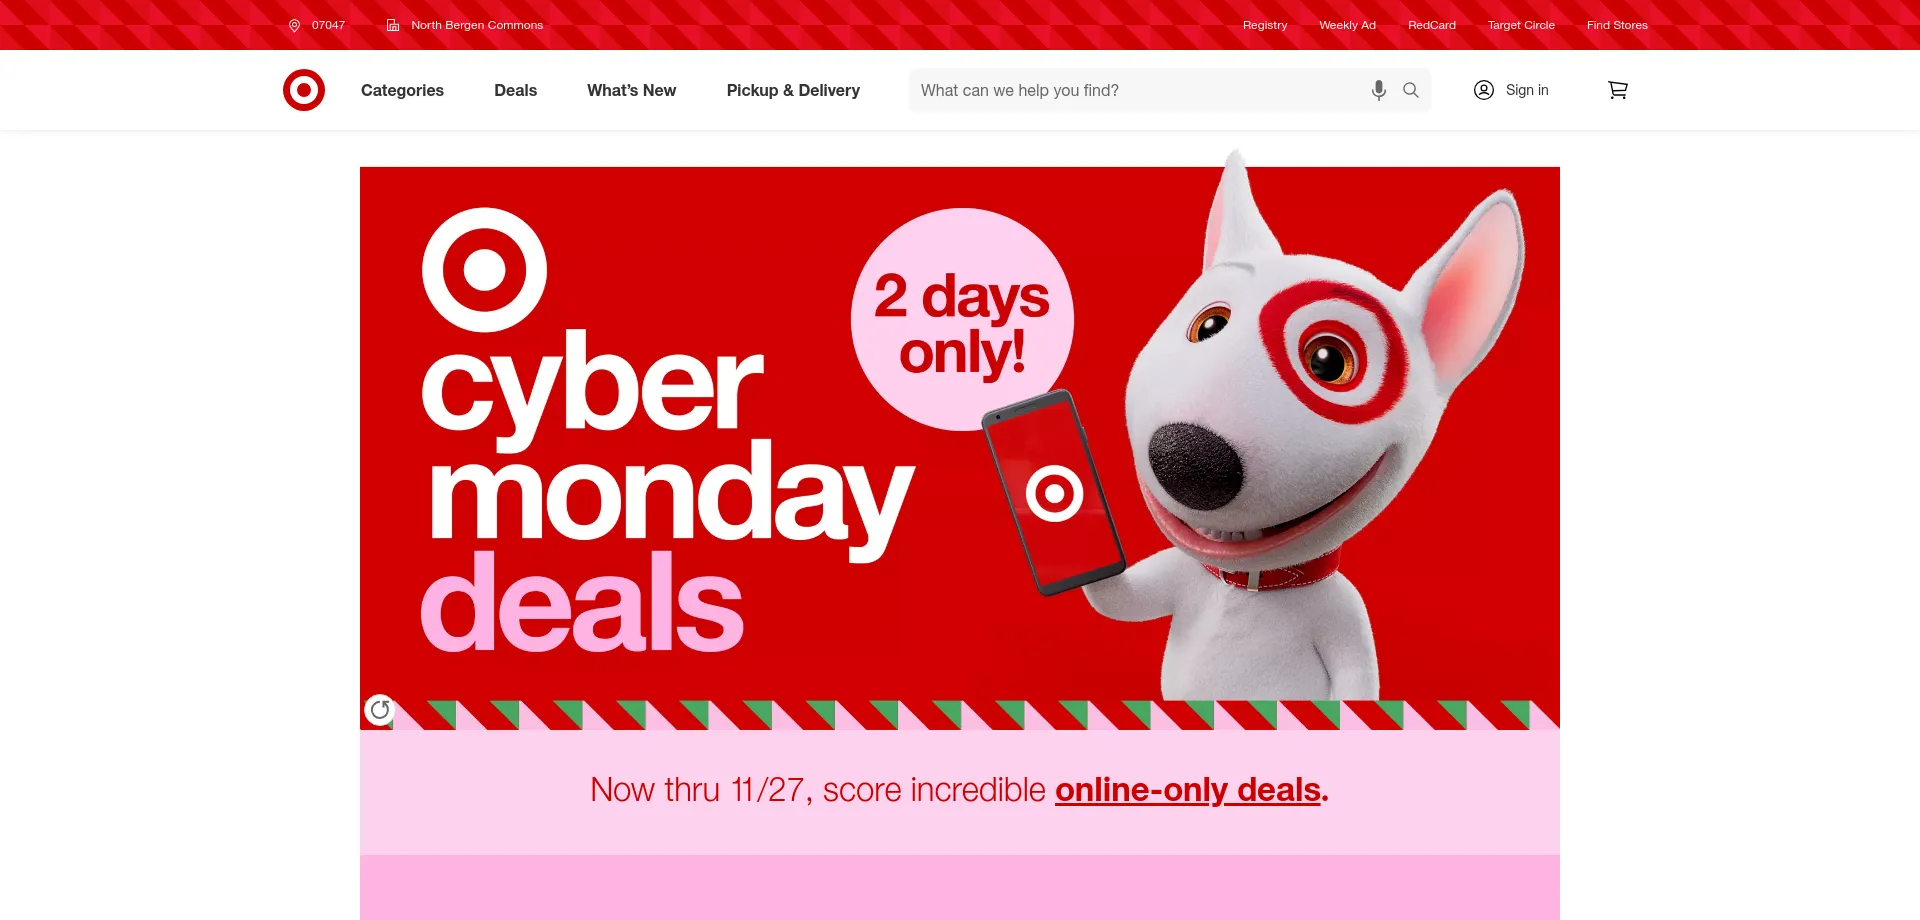 Target.com